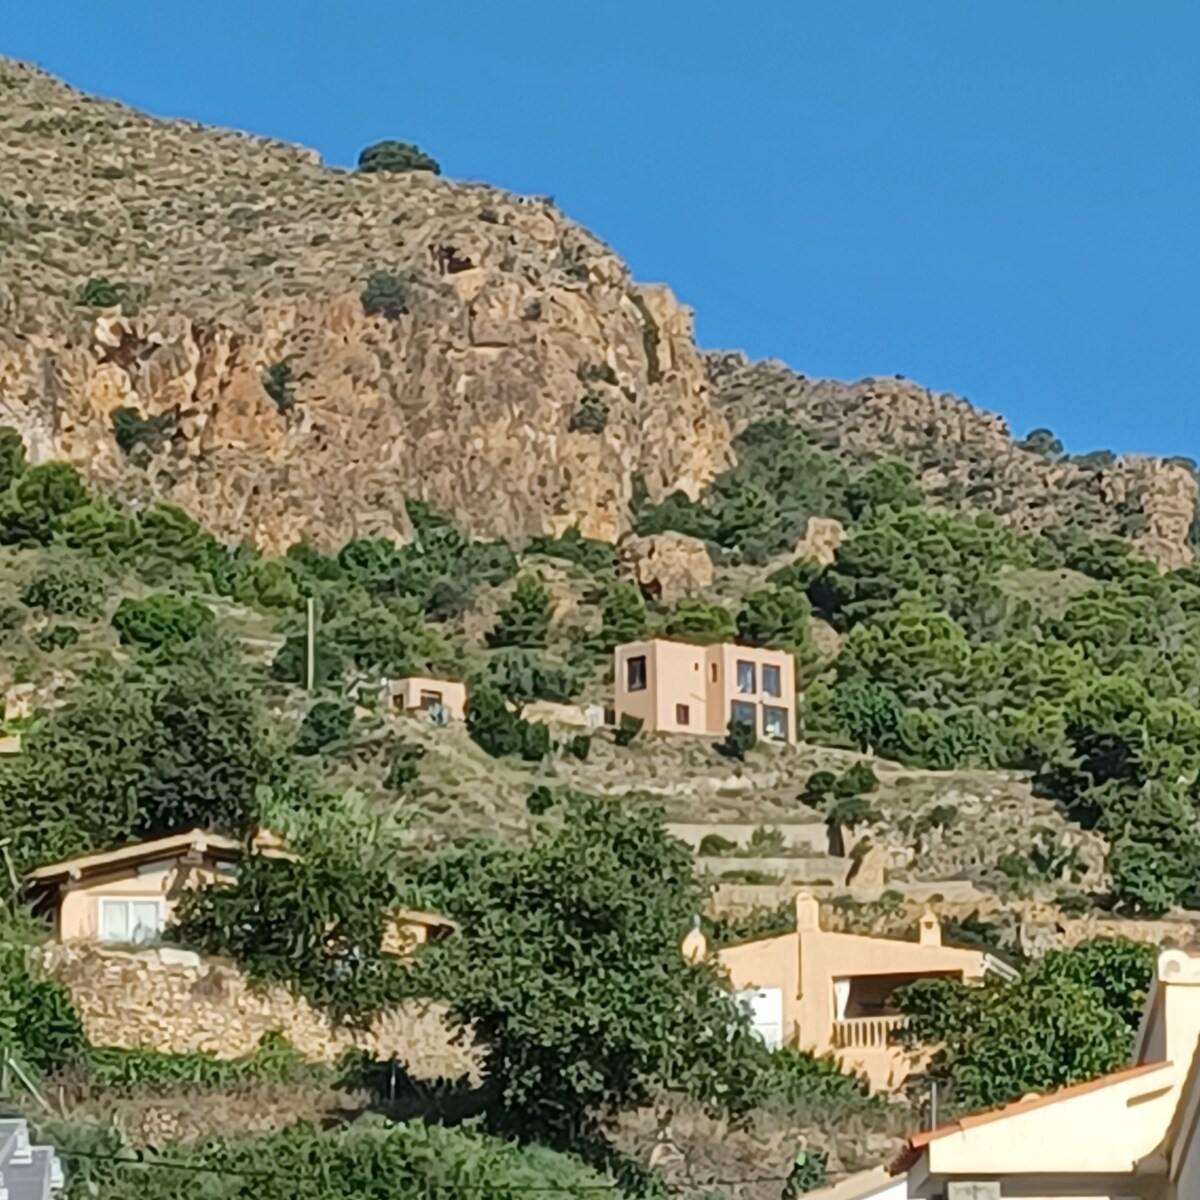 The castle of the Mora 3h. Mediterranean Sea